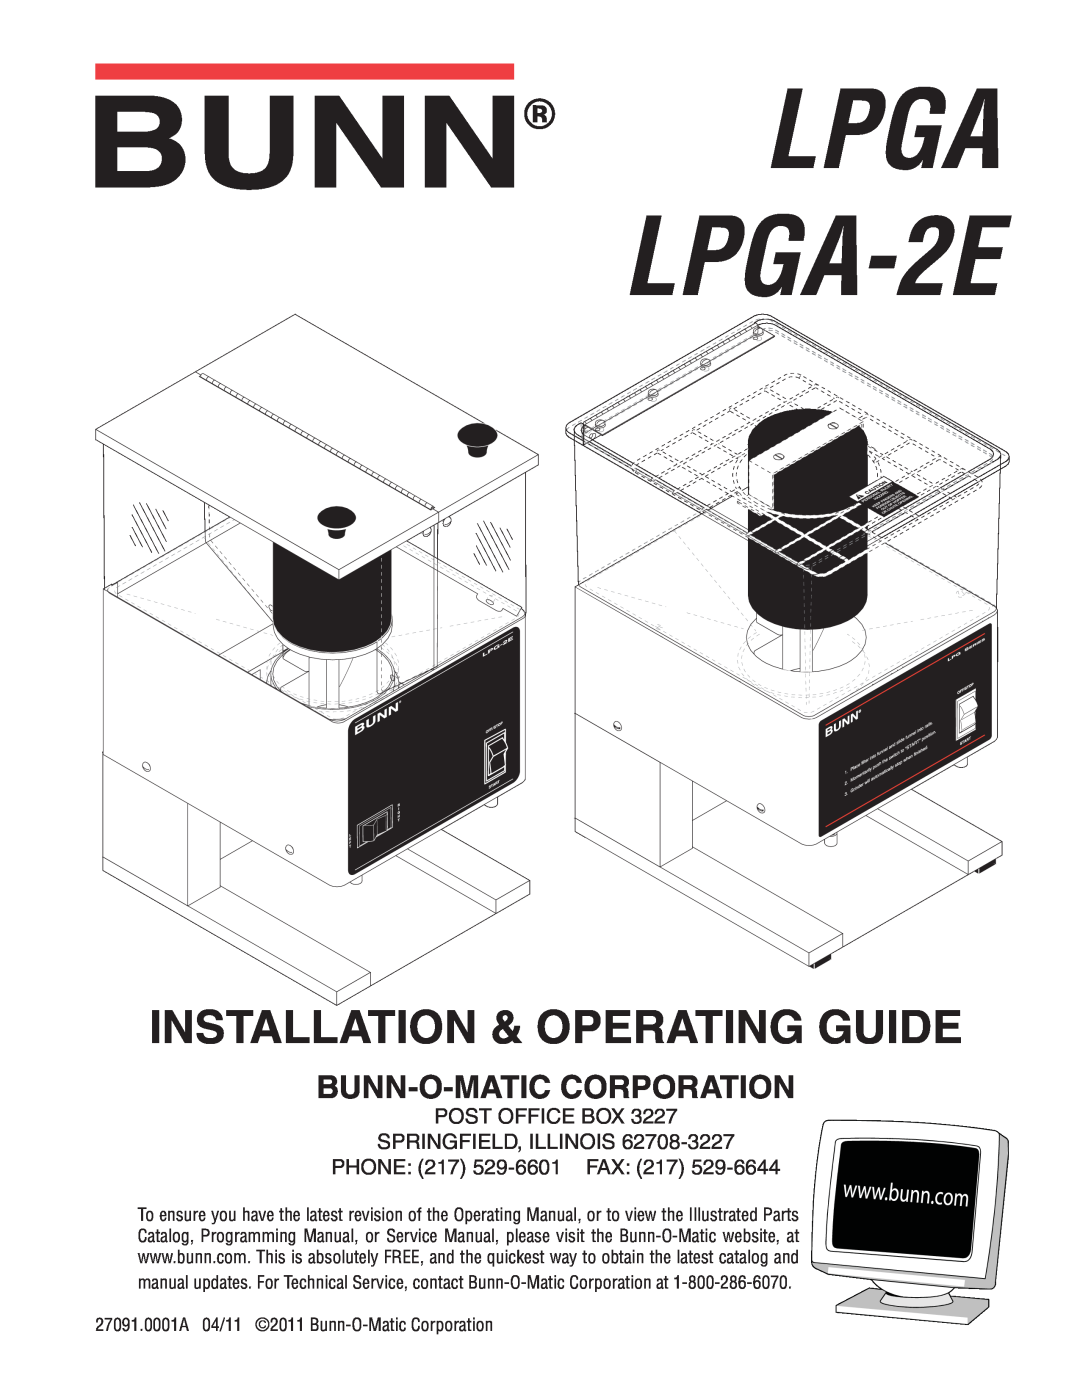 Bunn service manual LPGA LPGA-2E, Installation & Operating Guide, Bunn-O-Maticcorporation 